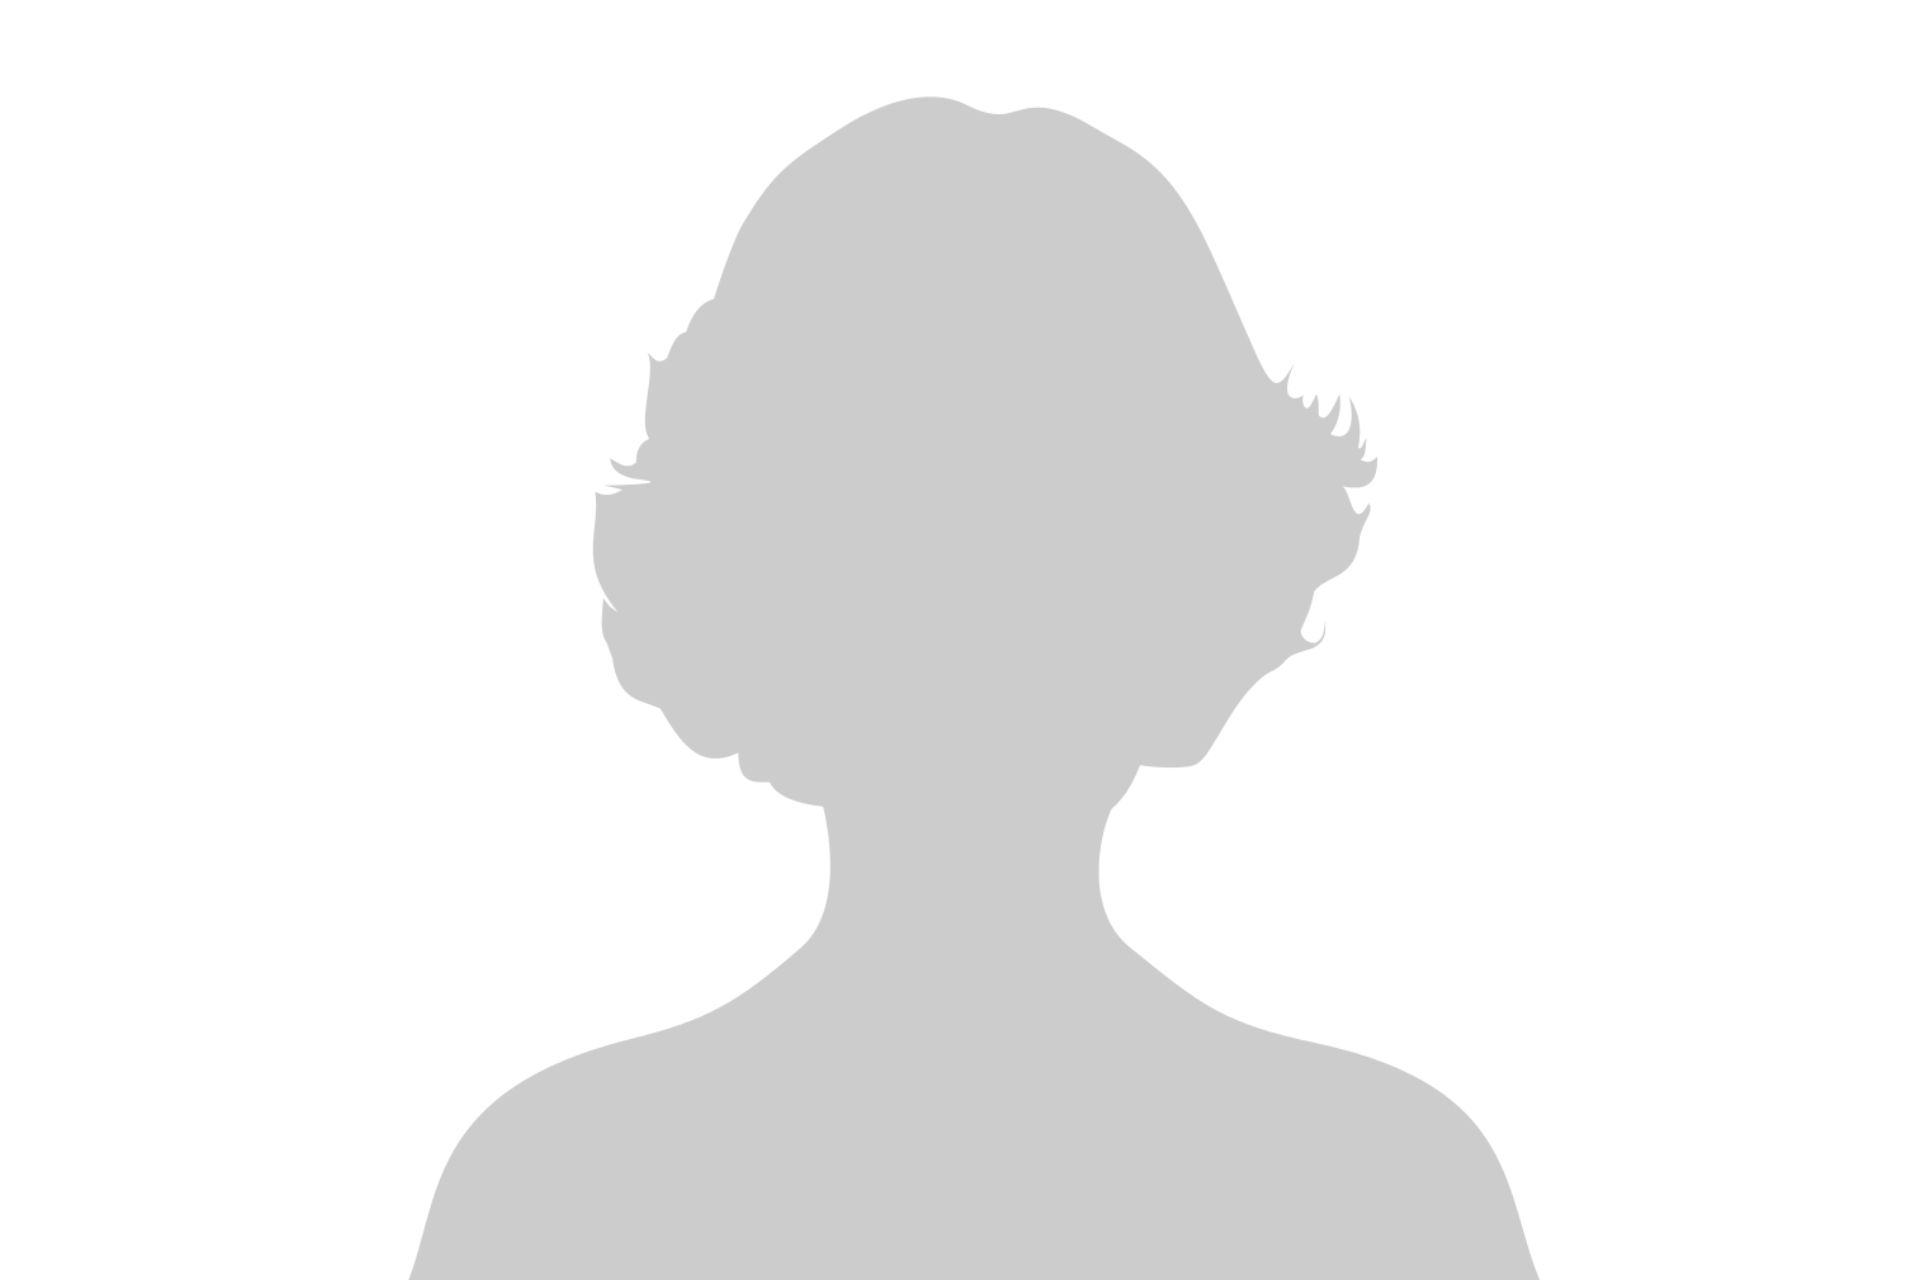 Female employee placeholder image